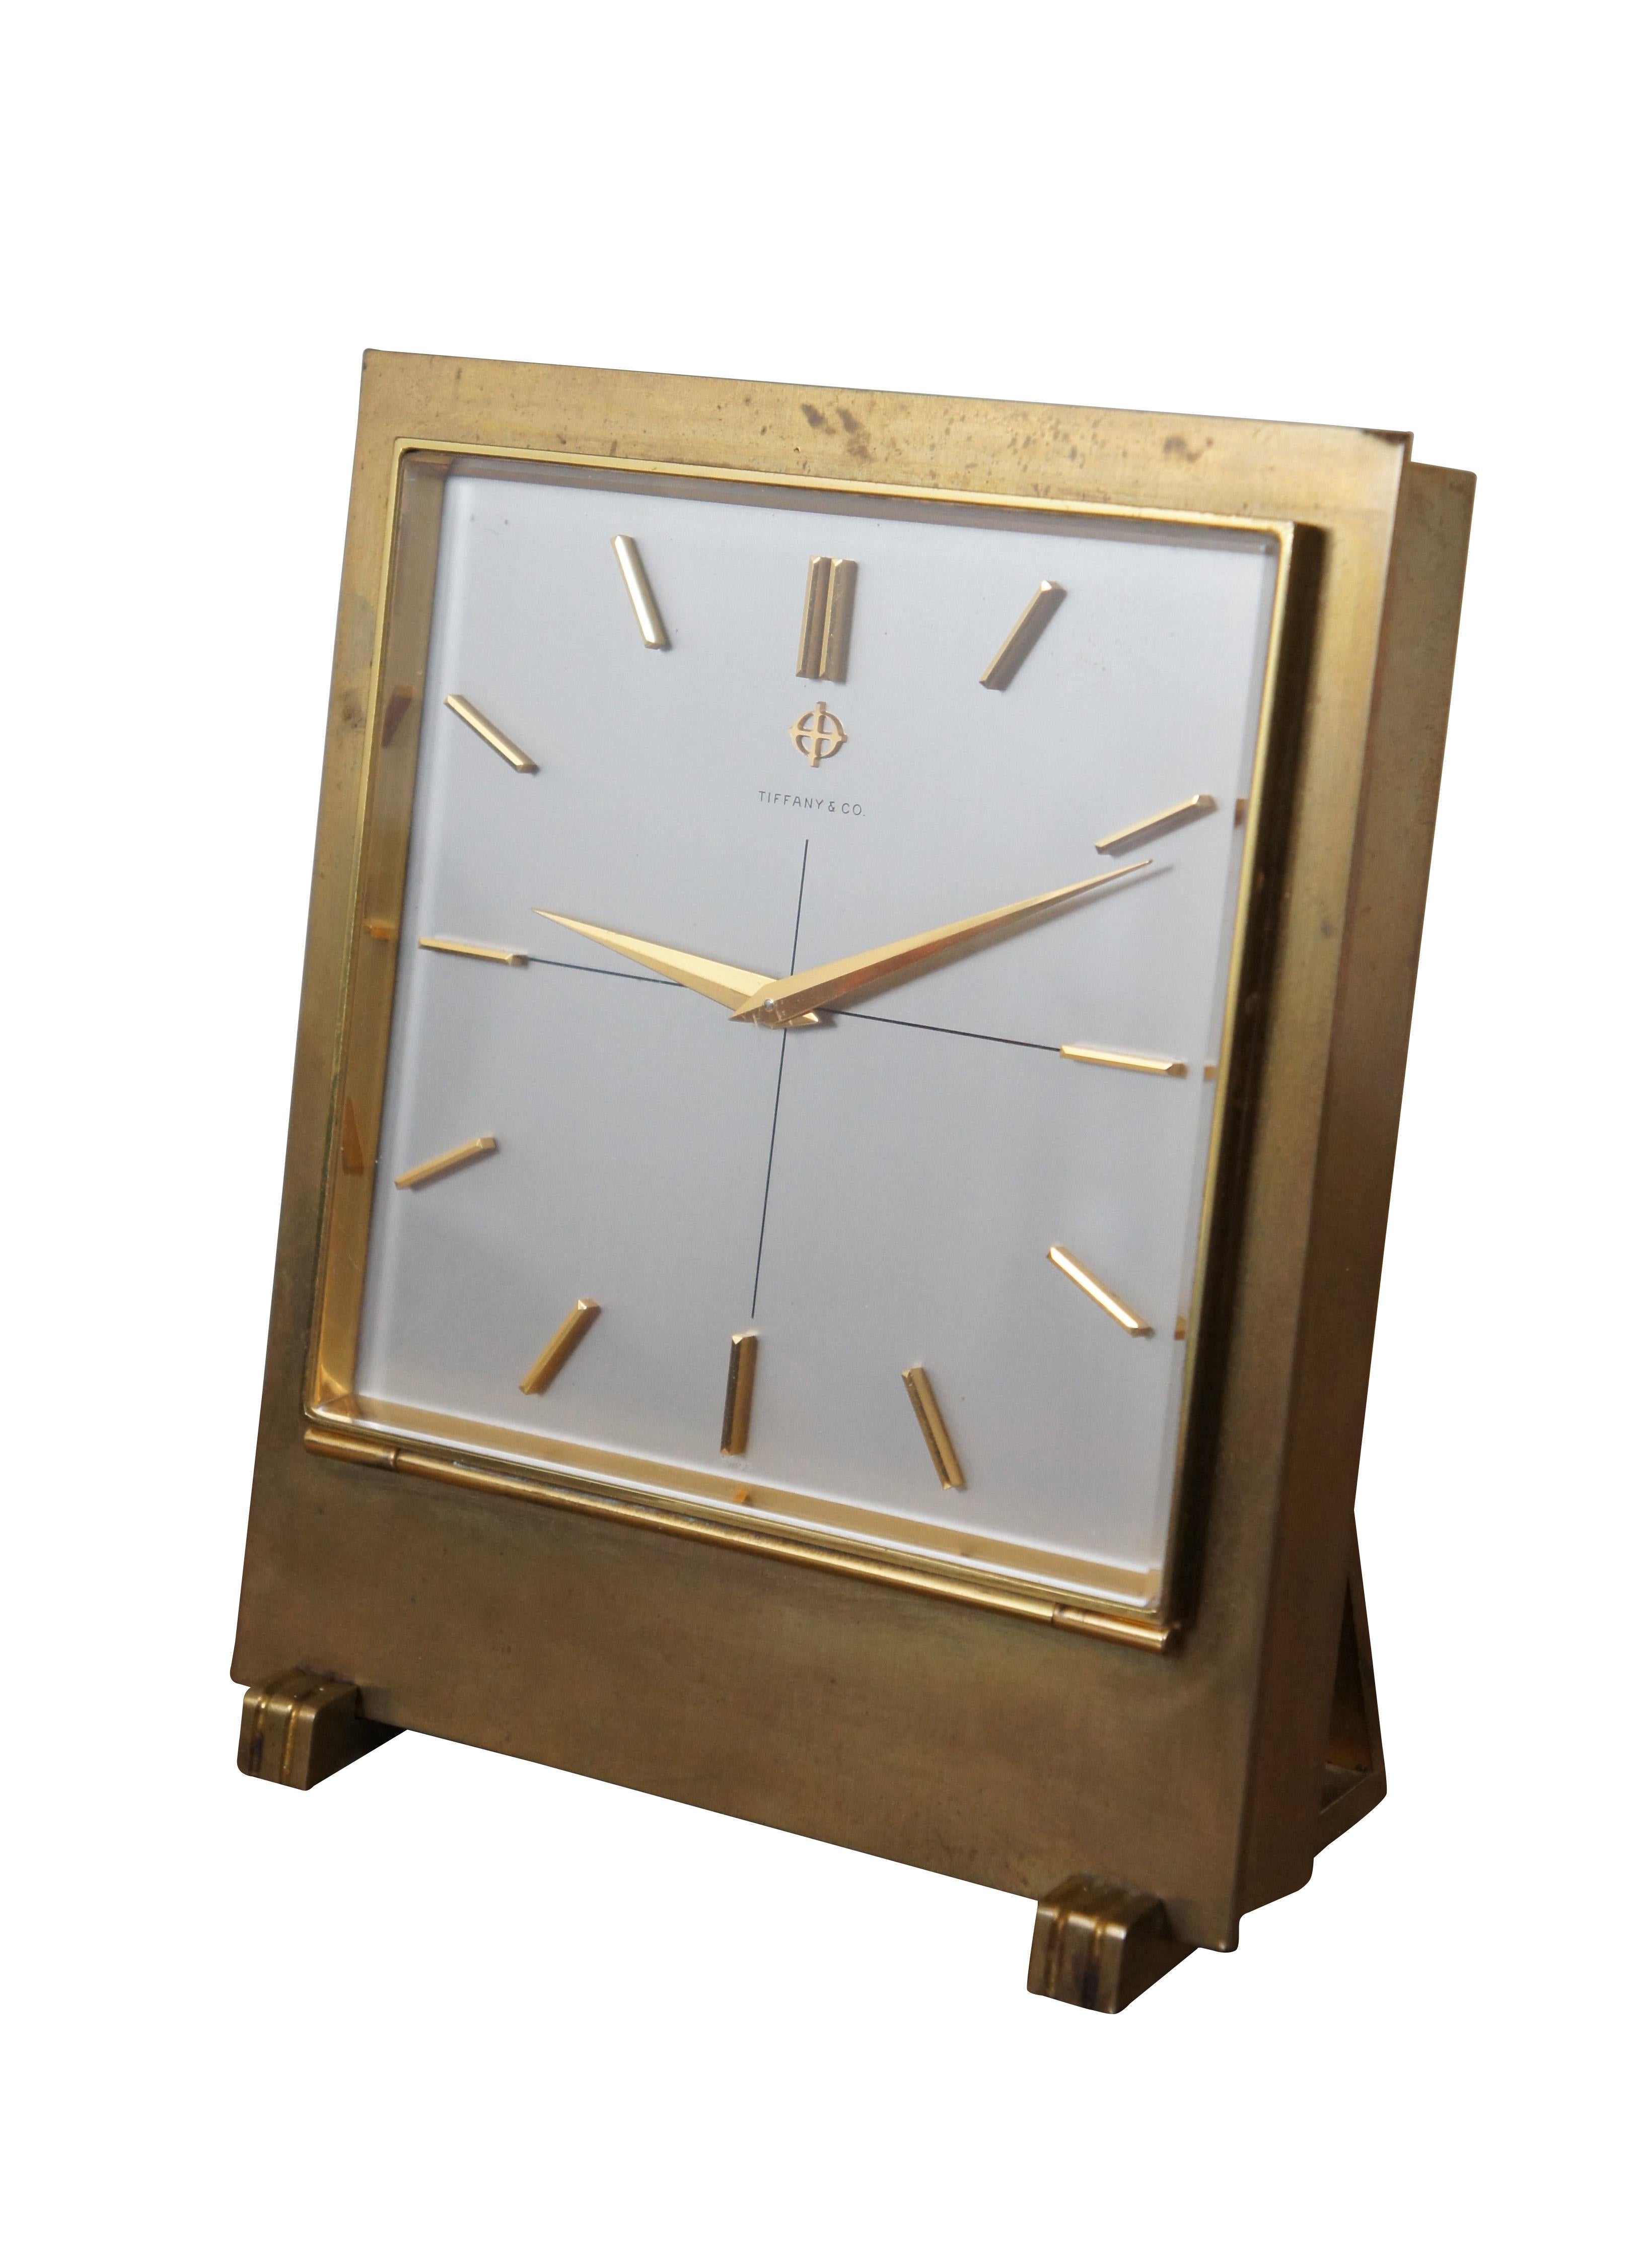 Horloge de bureau du milieu du siècle de Tiffany & Company en métal doré fonctionnant sur piles, présentant une forme rectangulaire avec des pieds et des aiguilles art déco, et des tirets minimalistes représentant les chiffres. Fabriquée par Zodiac